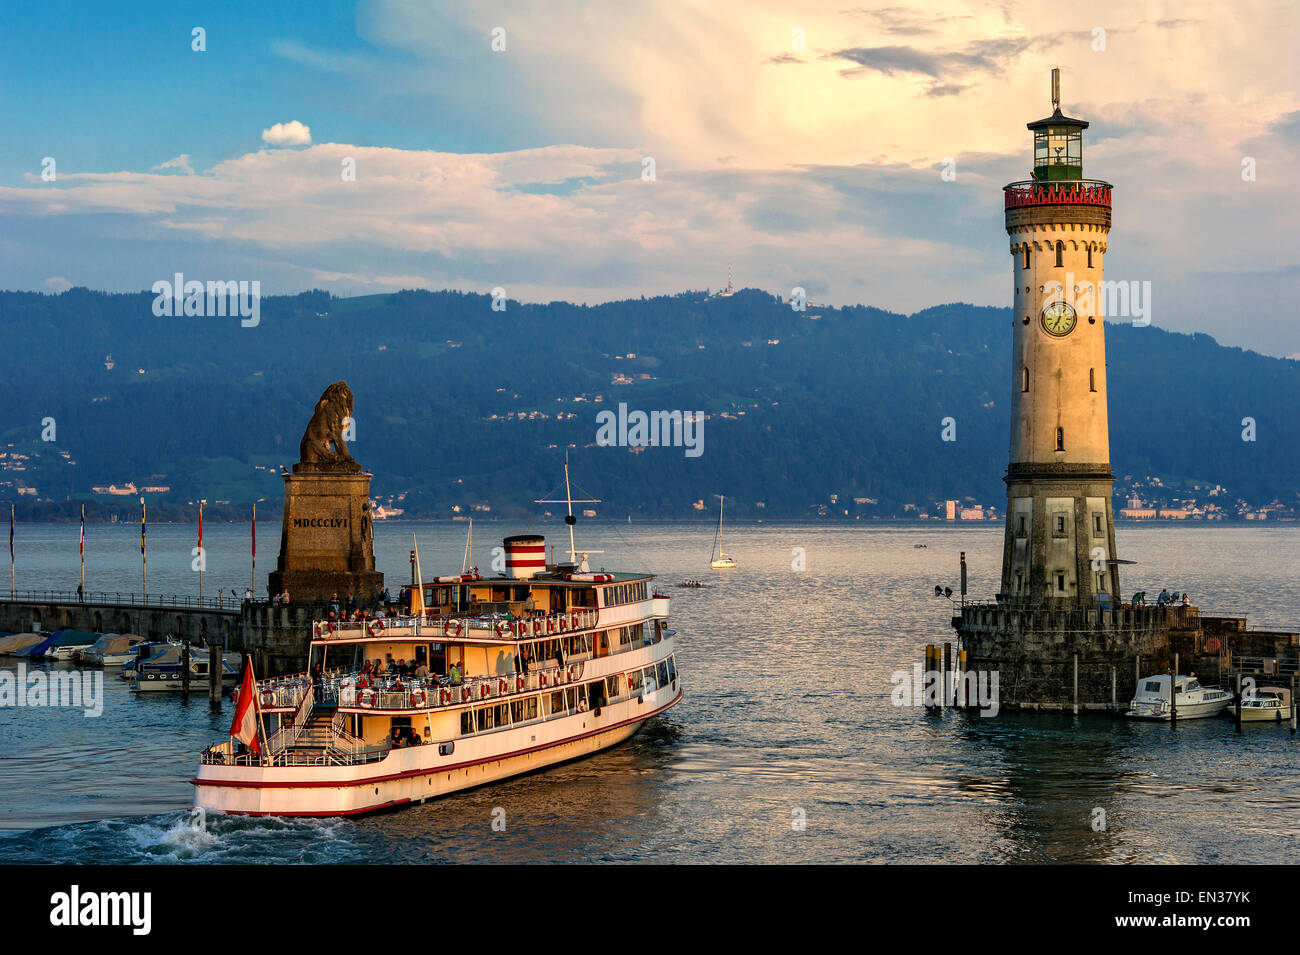 Leone bavarese, nuovo faro, porta ingresso, per i passeggeri dei traghetti nel porto di Austria, il lago di Costanza, Lindau, Svevia, Baviera, Germania Foto Stock